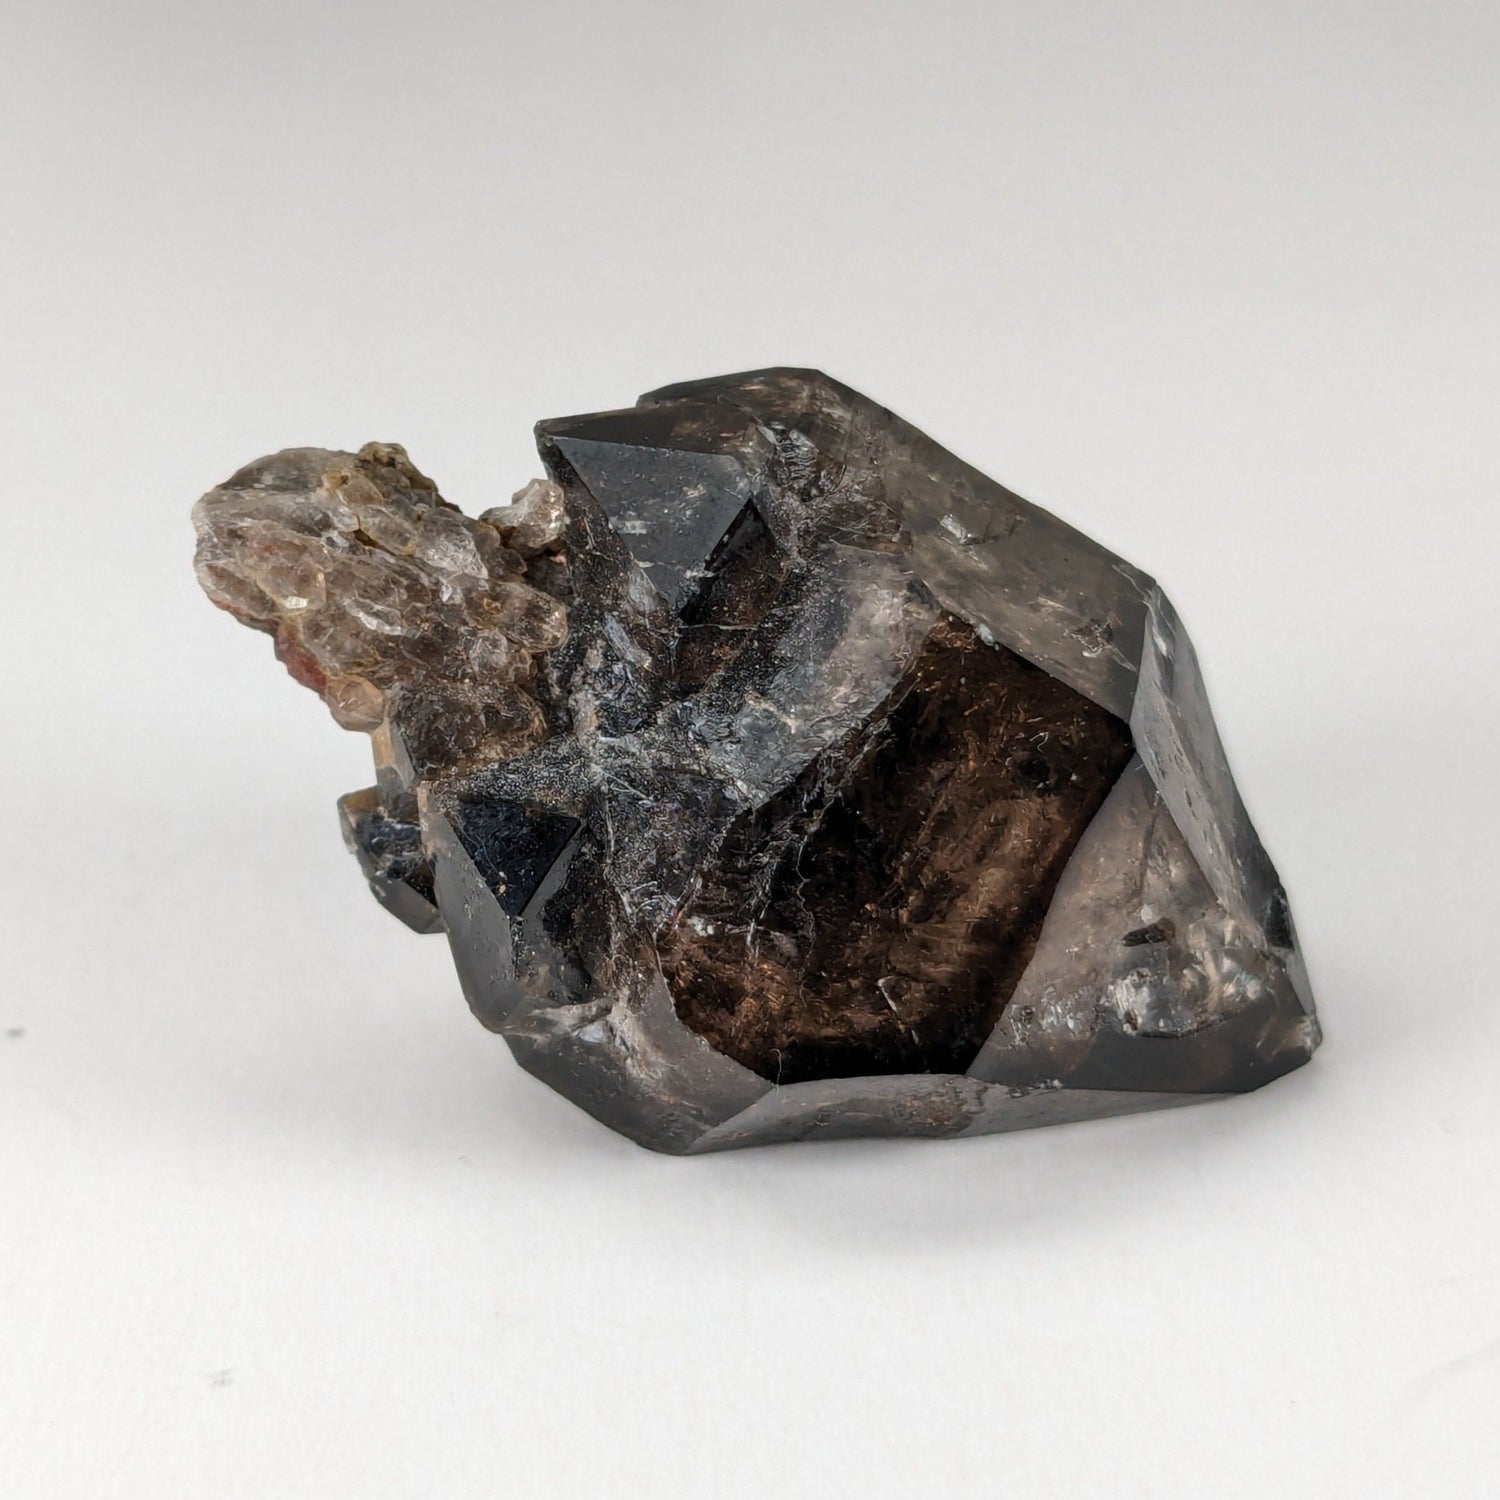 Sceptre Cristal de quartz fumé | 36mm 14gr | Mont Saint-Hilaire, Québec, Canada